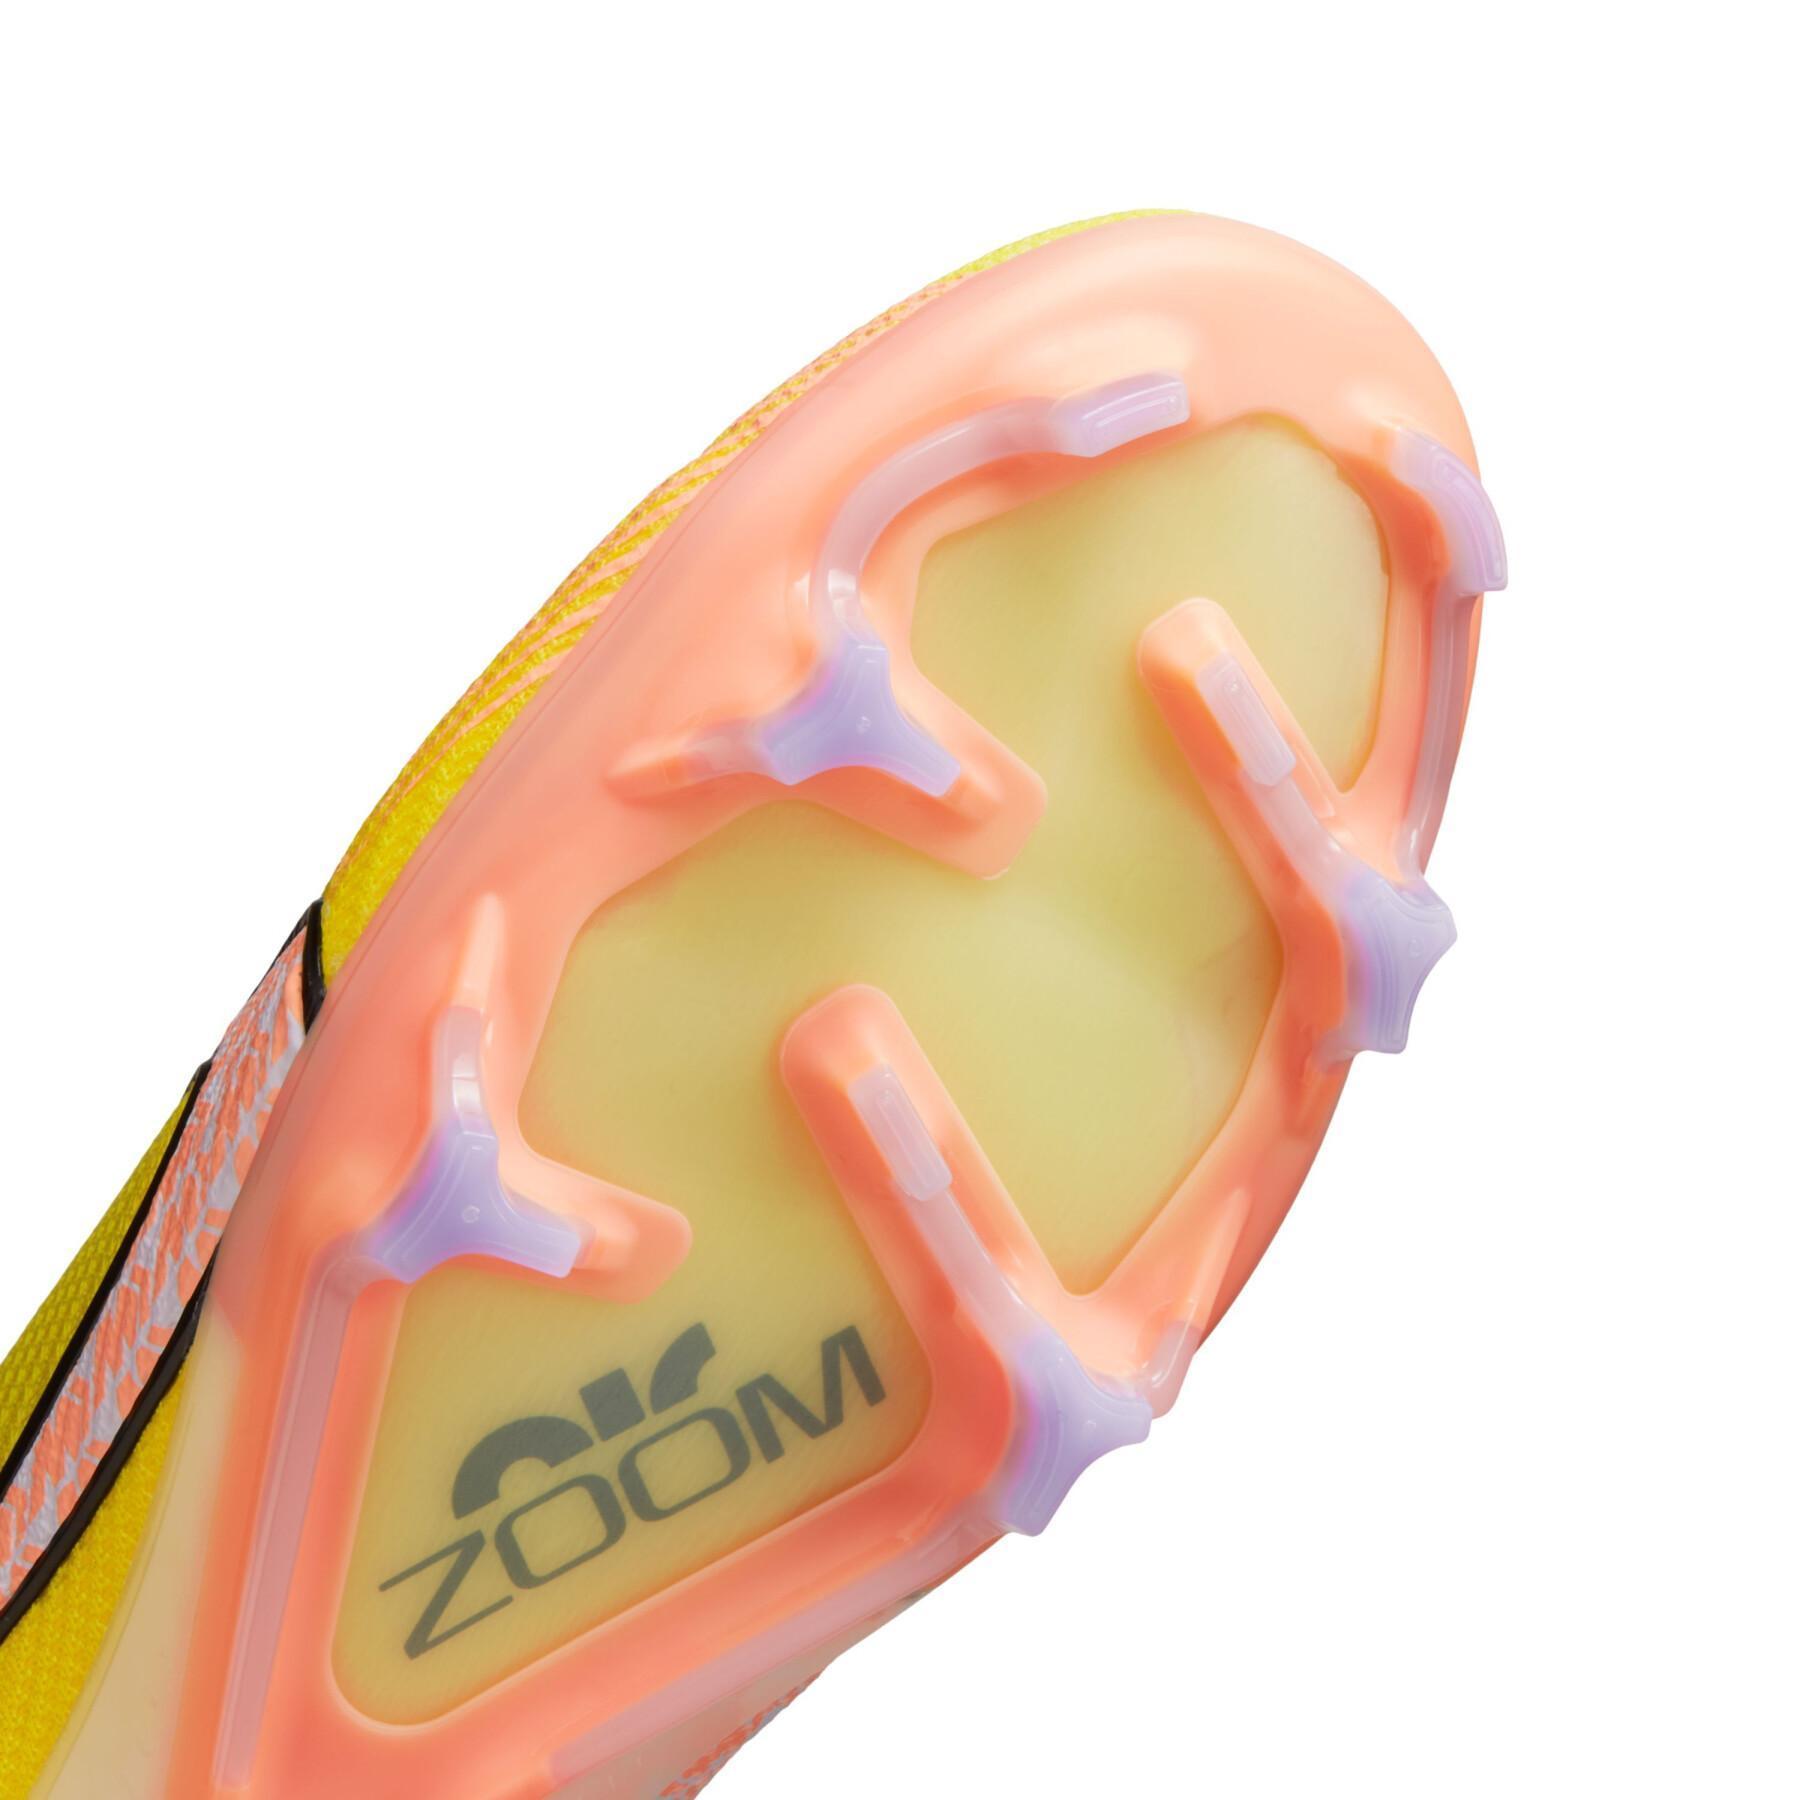 Fußballschuhe Nike Zoom Mercurial Vapor 15 Elite FG - Lucent Pack